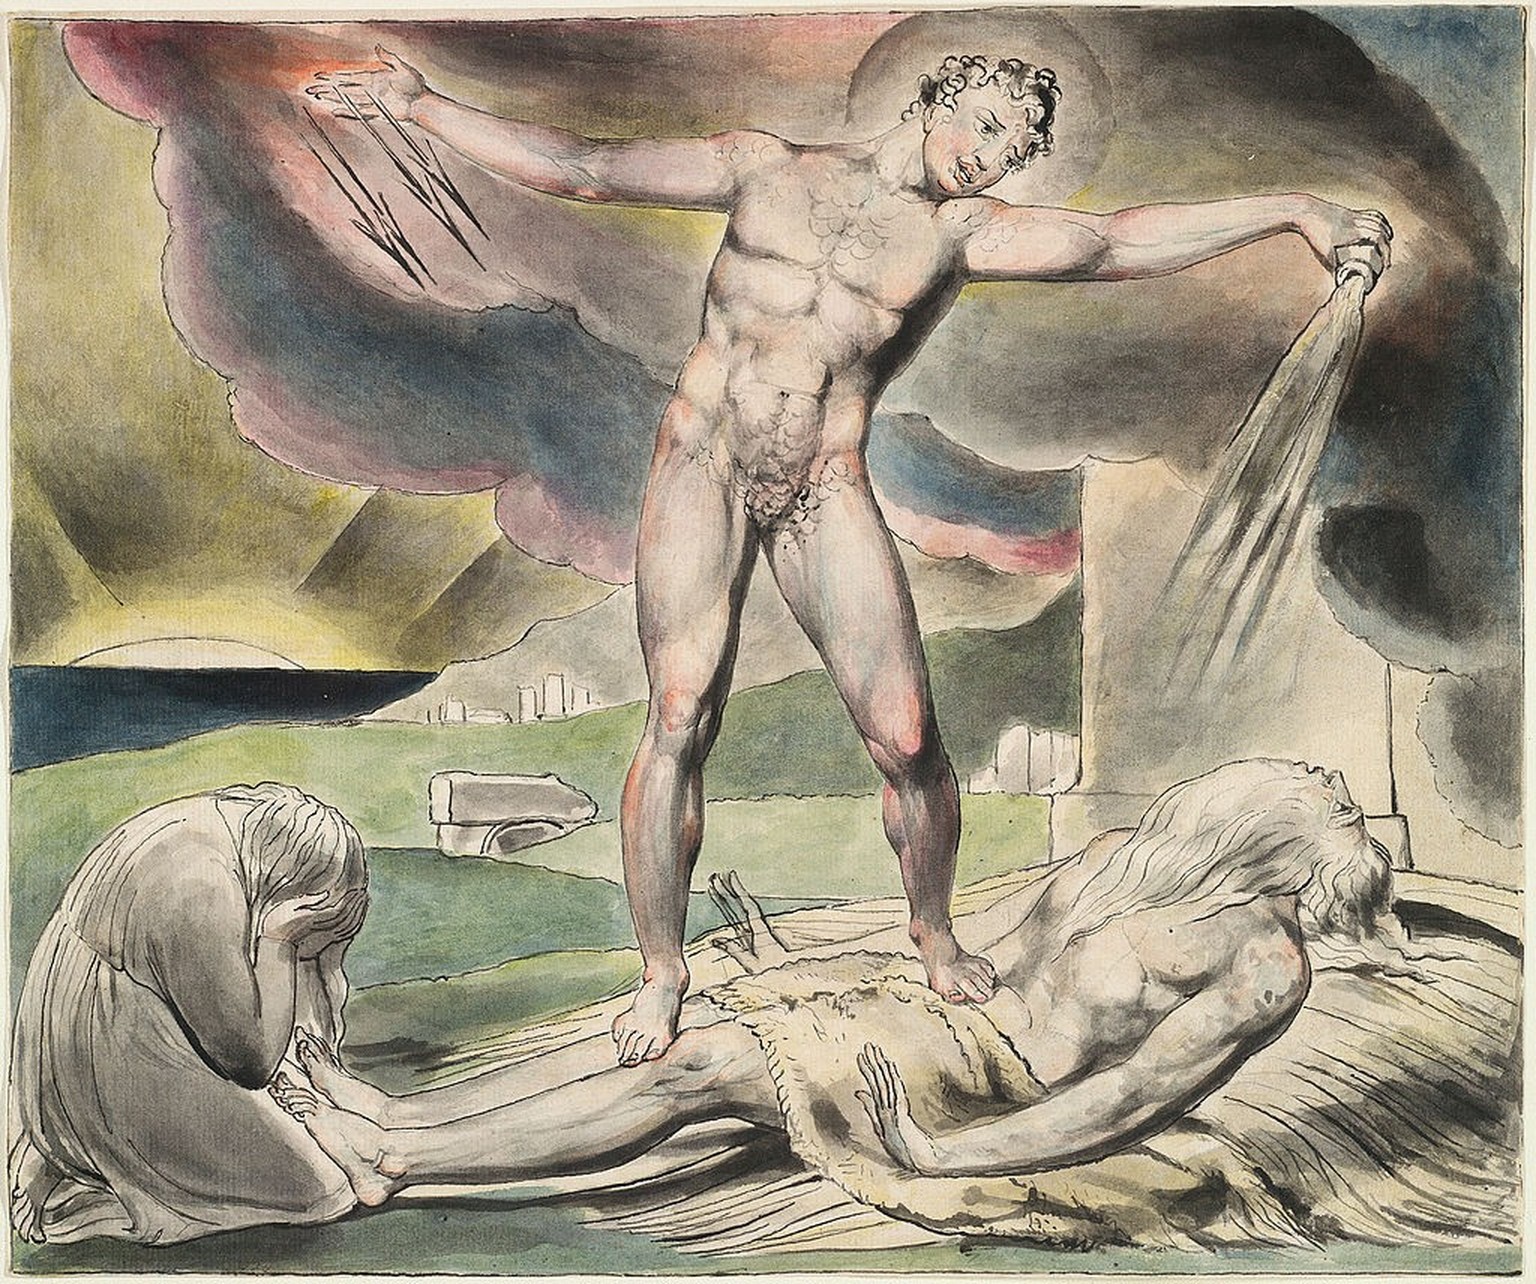 Satan schüttet die Plagen über Hiob aus (Aquarell von William Blake)
https://de.wikipedia.org/wiki/Ijob#/media/Datei:Blake_Book_of_Job_Linell_set_6.jpg